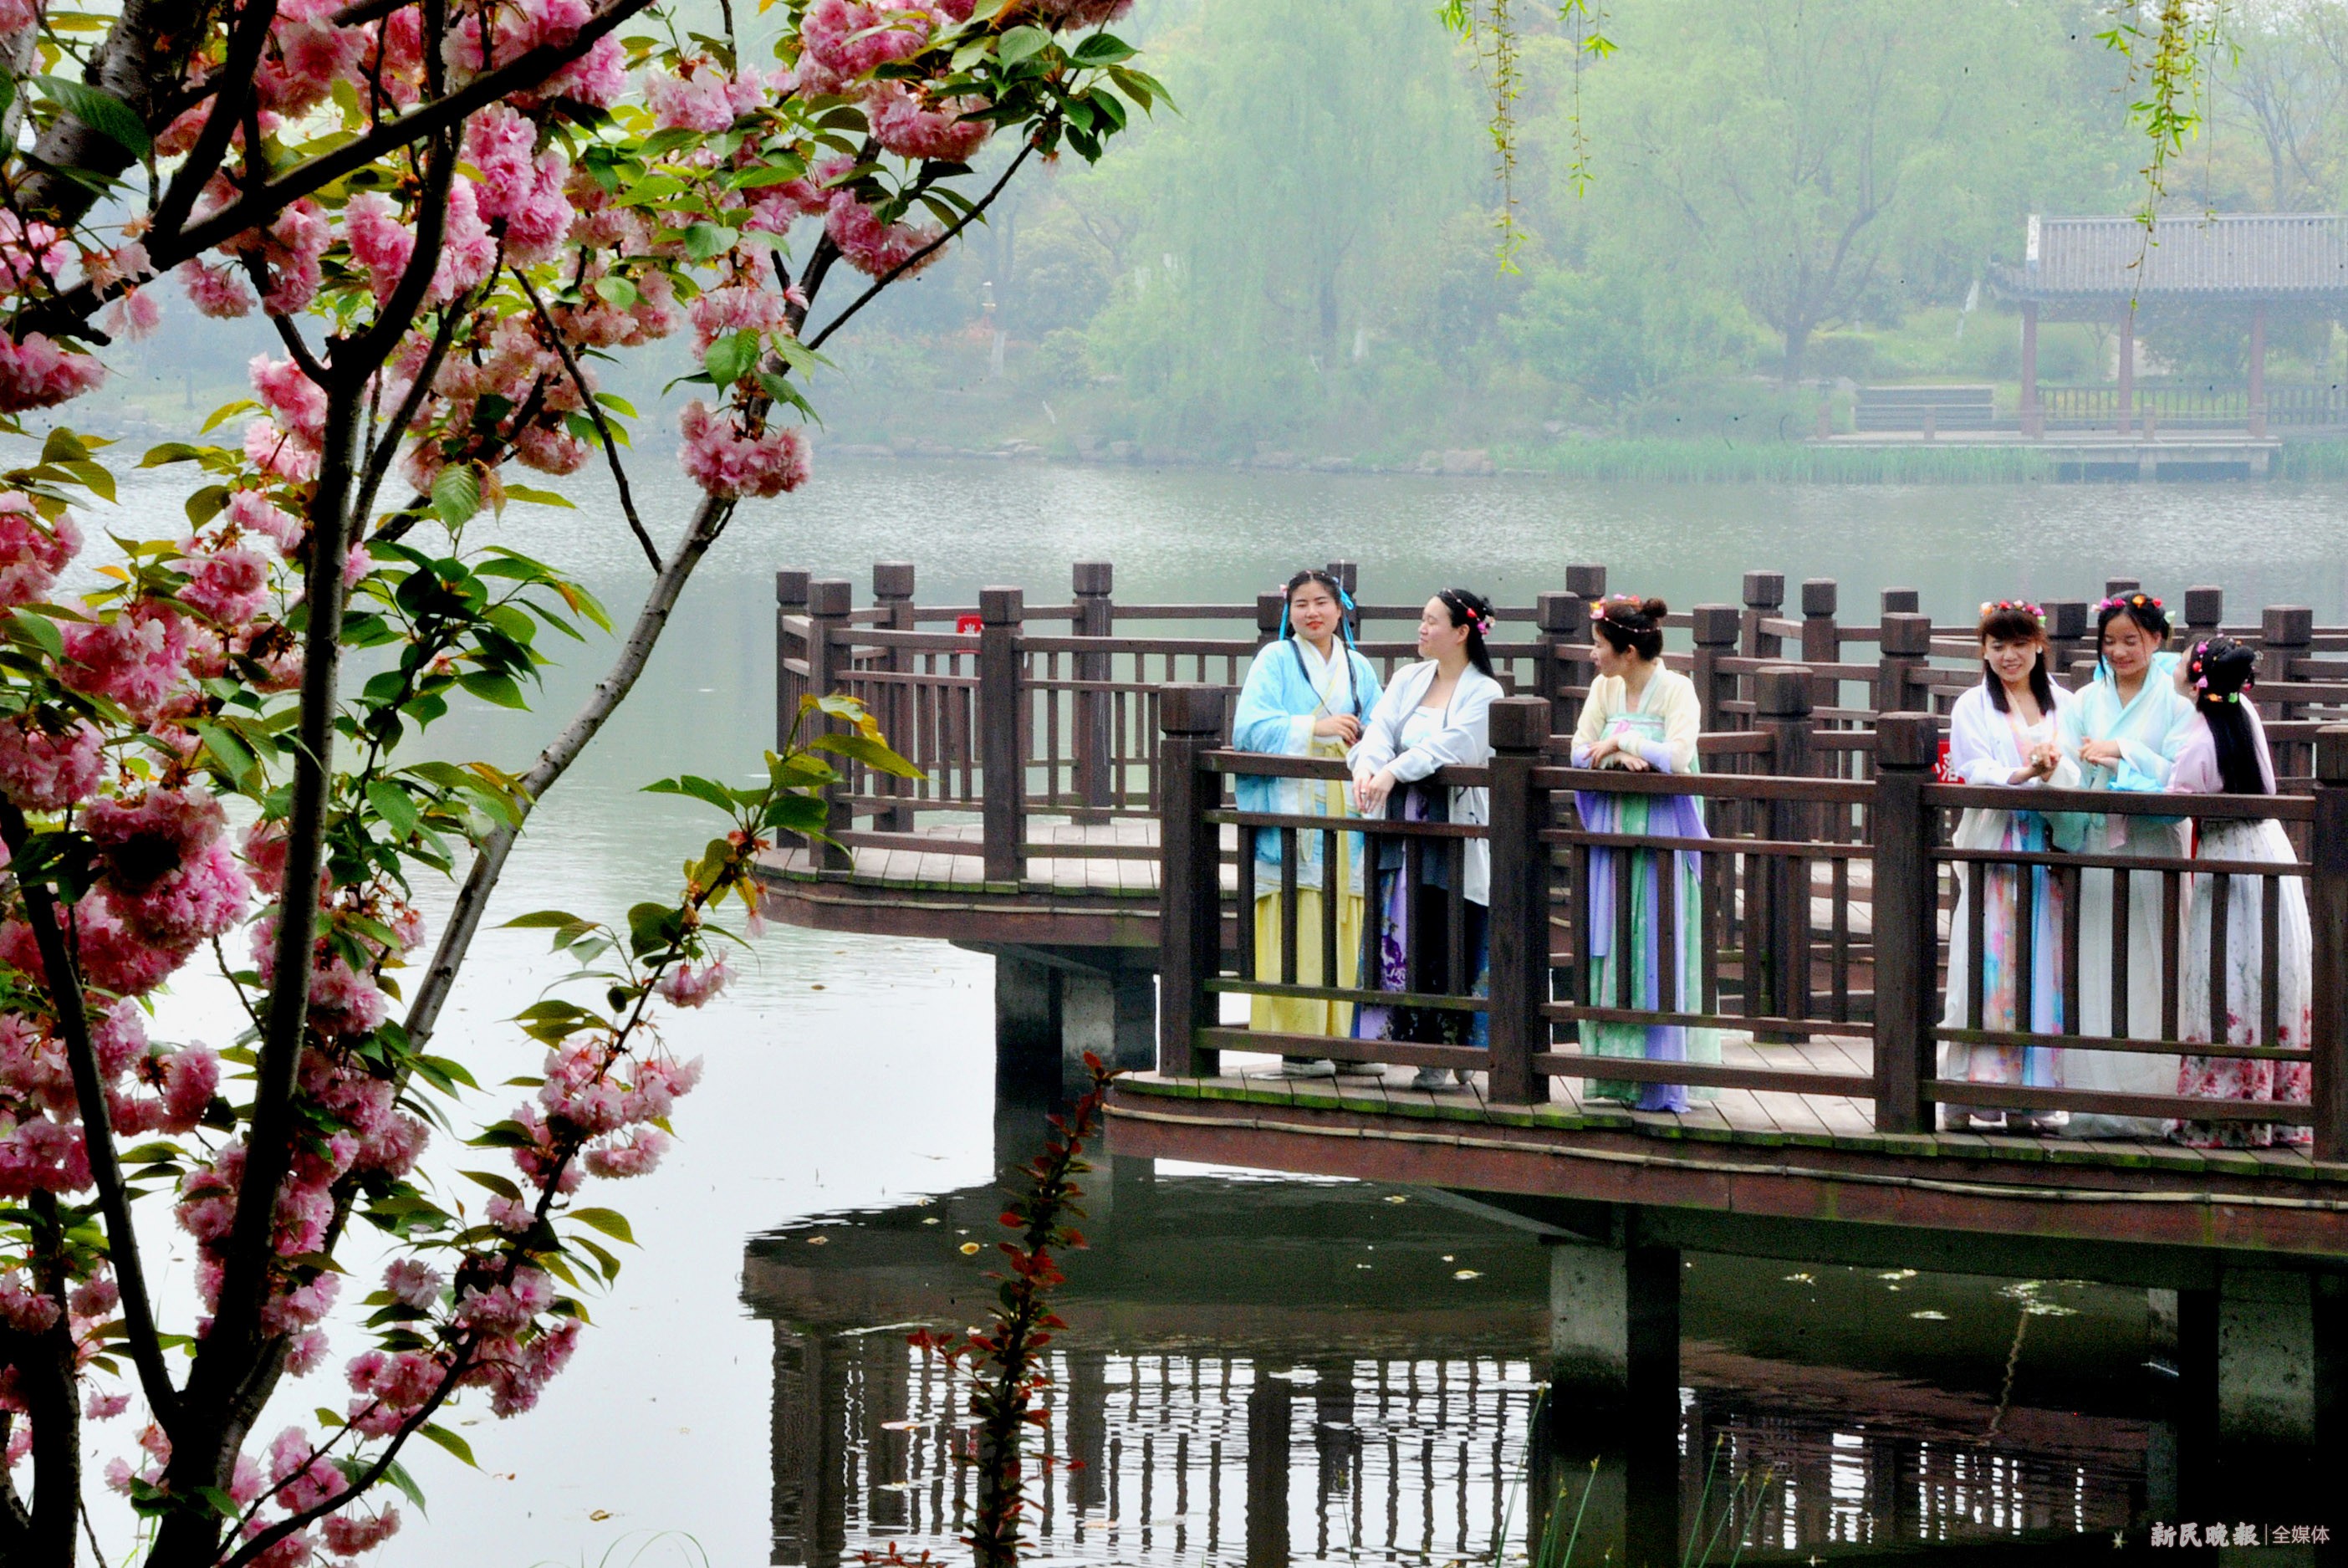 上海话音频丨三月三上巳节 水边丽人来相会